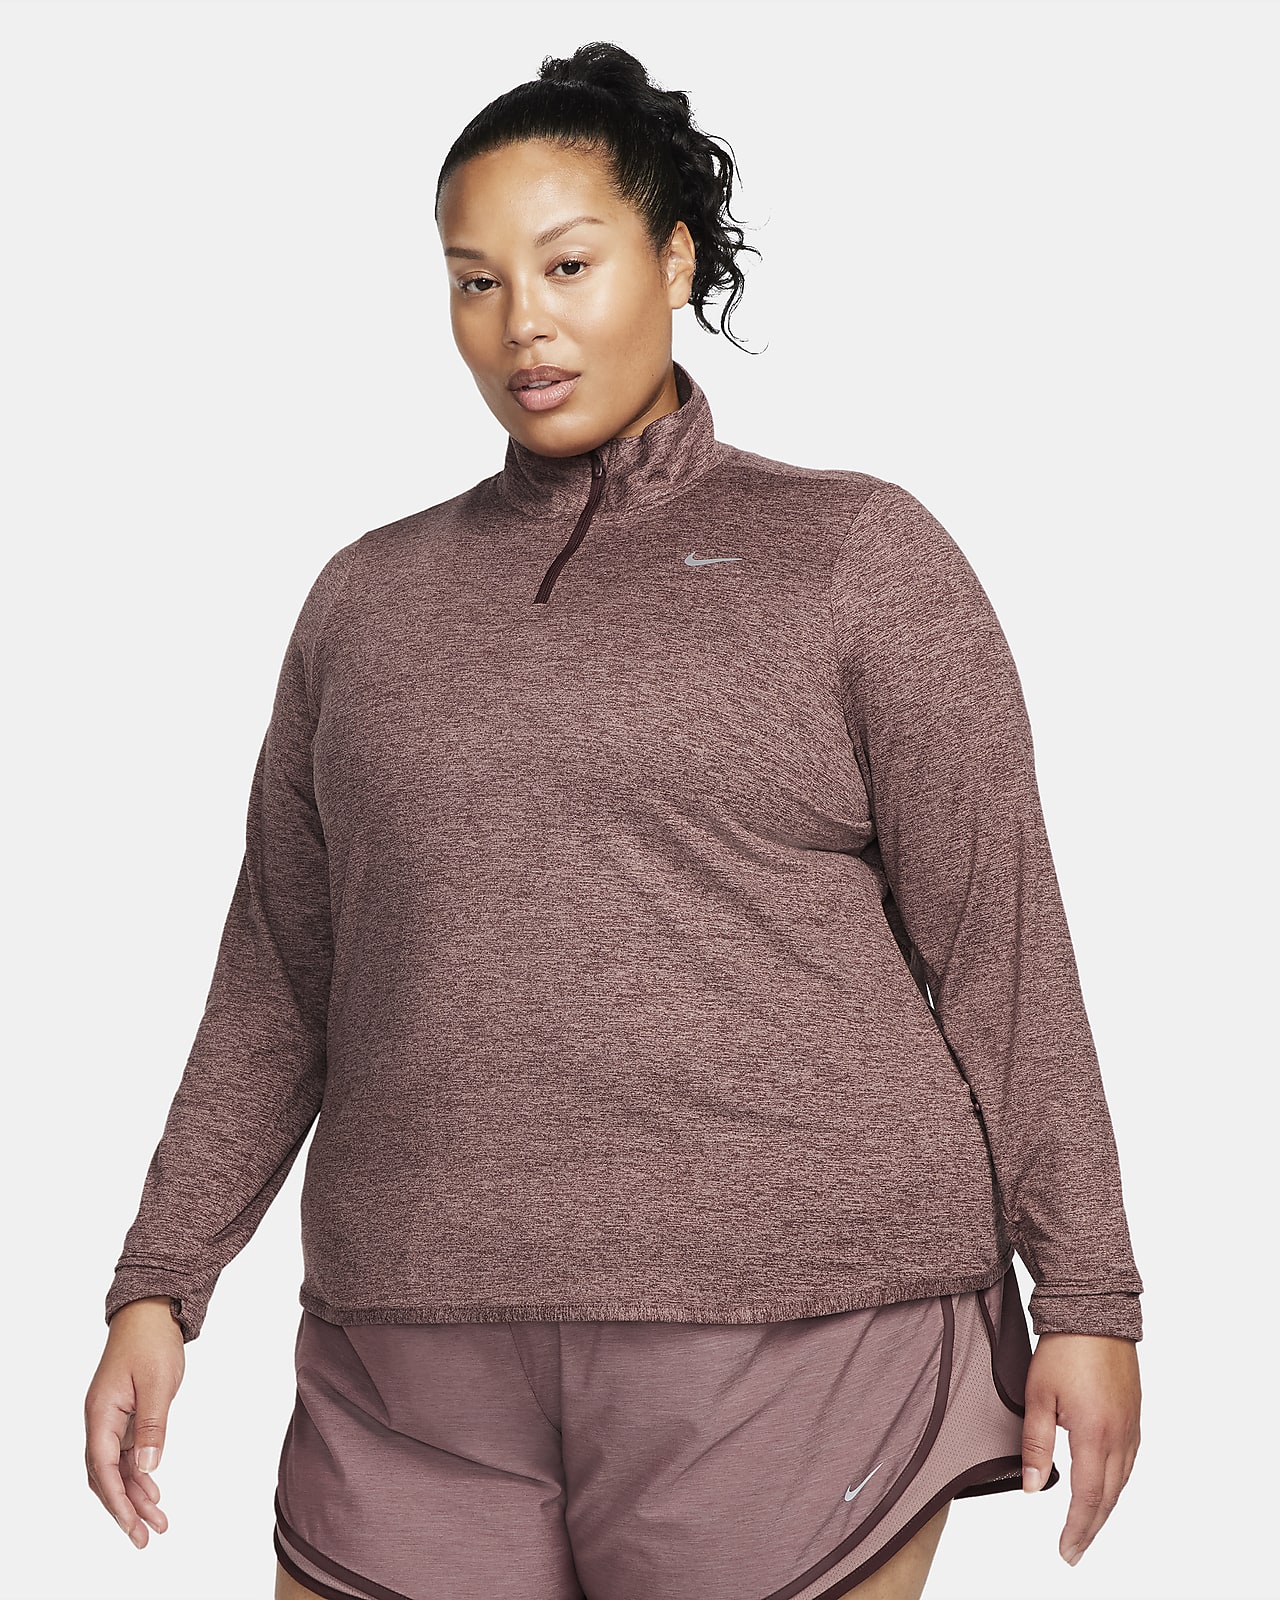 Γυναικεία μπλούζα για τρέξιμο με φερμουάρ στο 1/4 του μήκους Nike Dri-FIT Swift UV (μεγάλα μεγέθη)